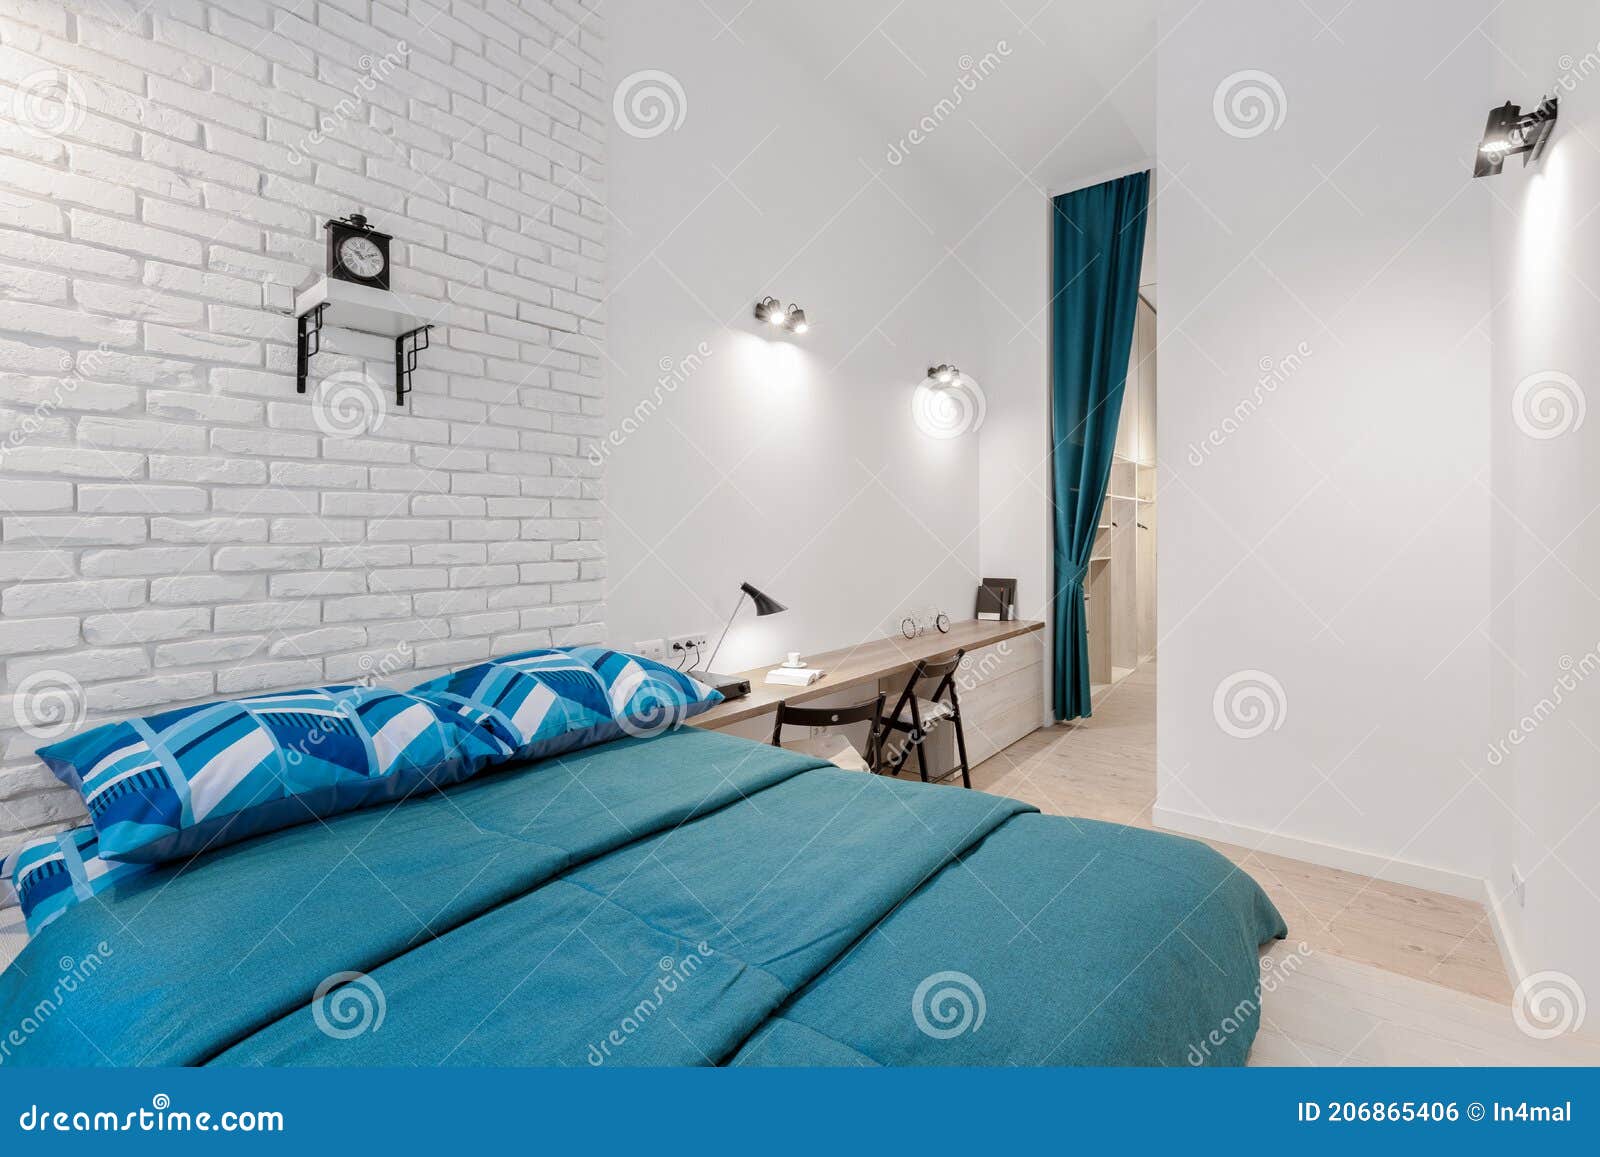 Cortina Blanca Y Azul En Dormitorio Imagen de archivo - Imagen de